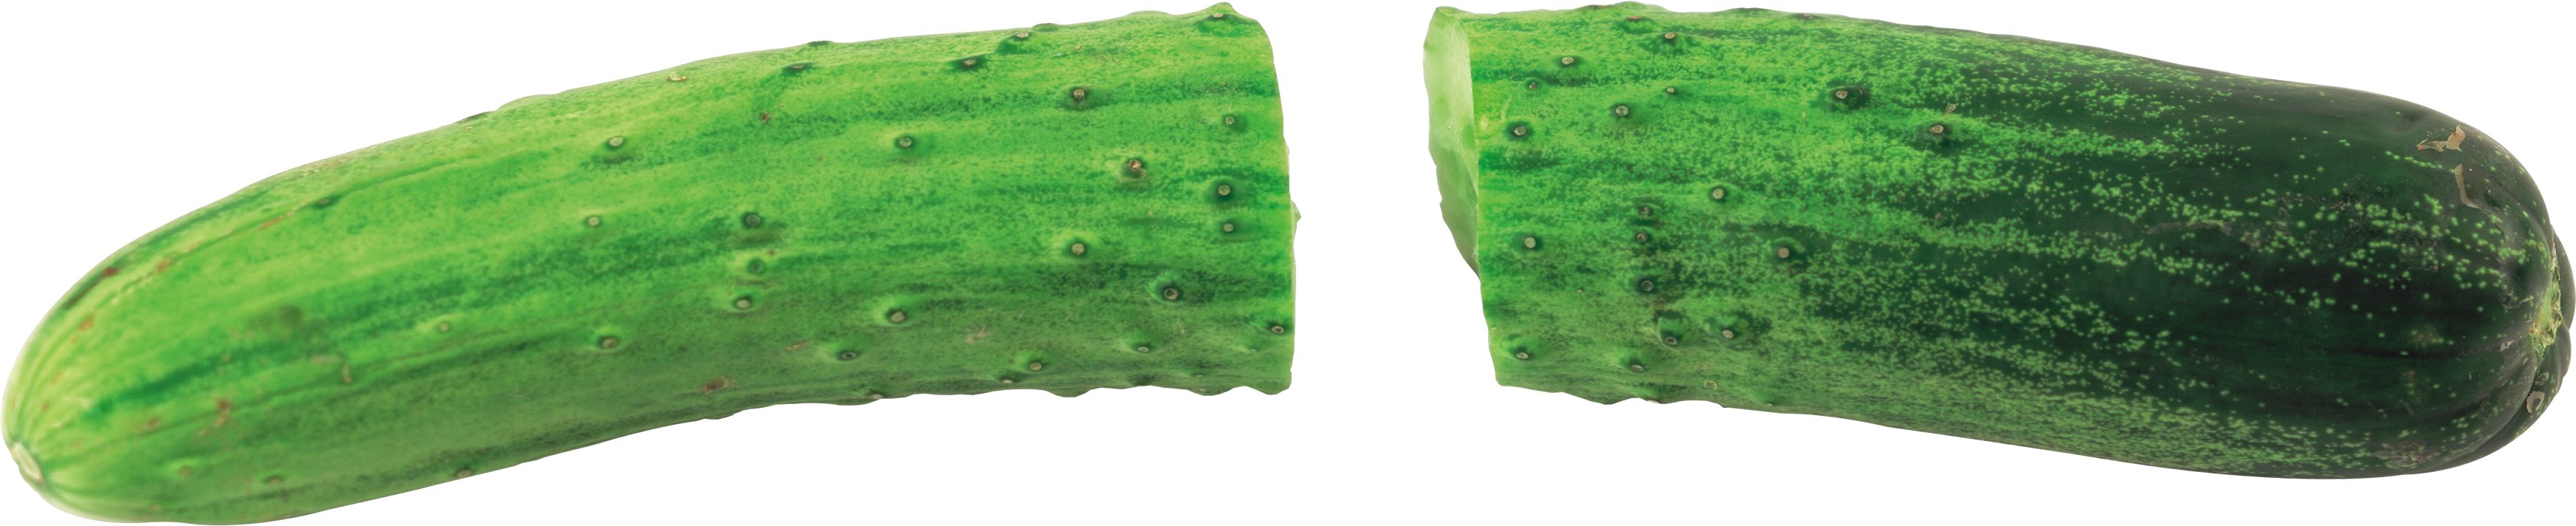 A Close-up Of A Cucumber